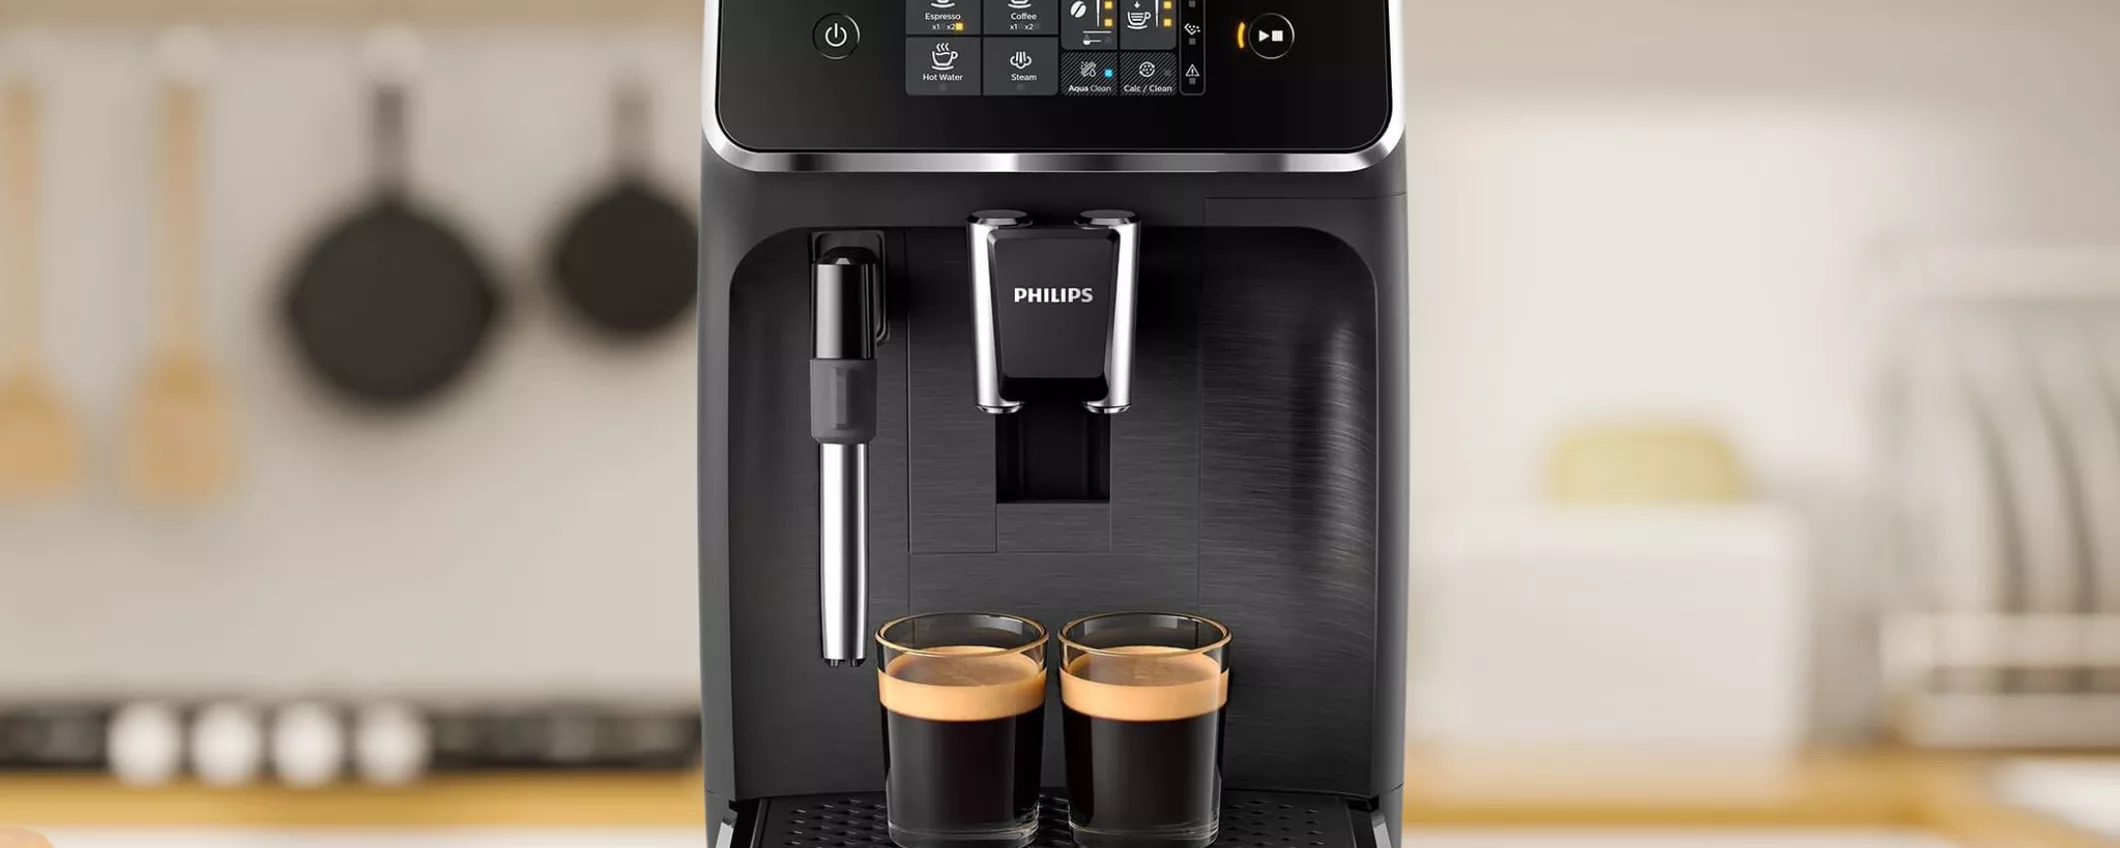 PAZZESCO: 230€ DI SCONTO per Philips Macchina Da Caffè Automatica SUPER PROFESSIONALE